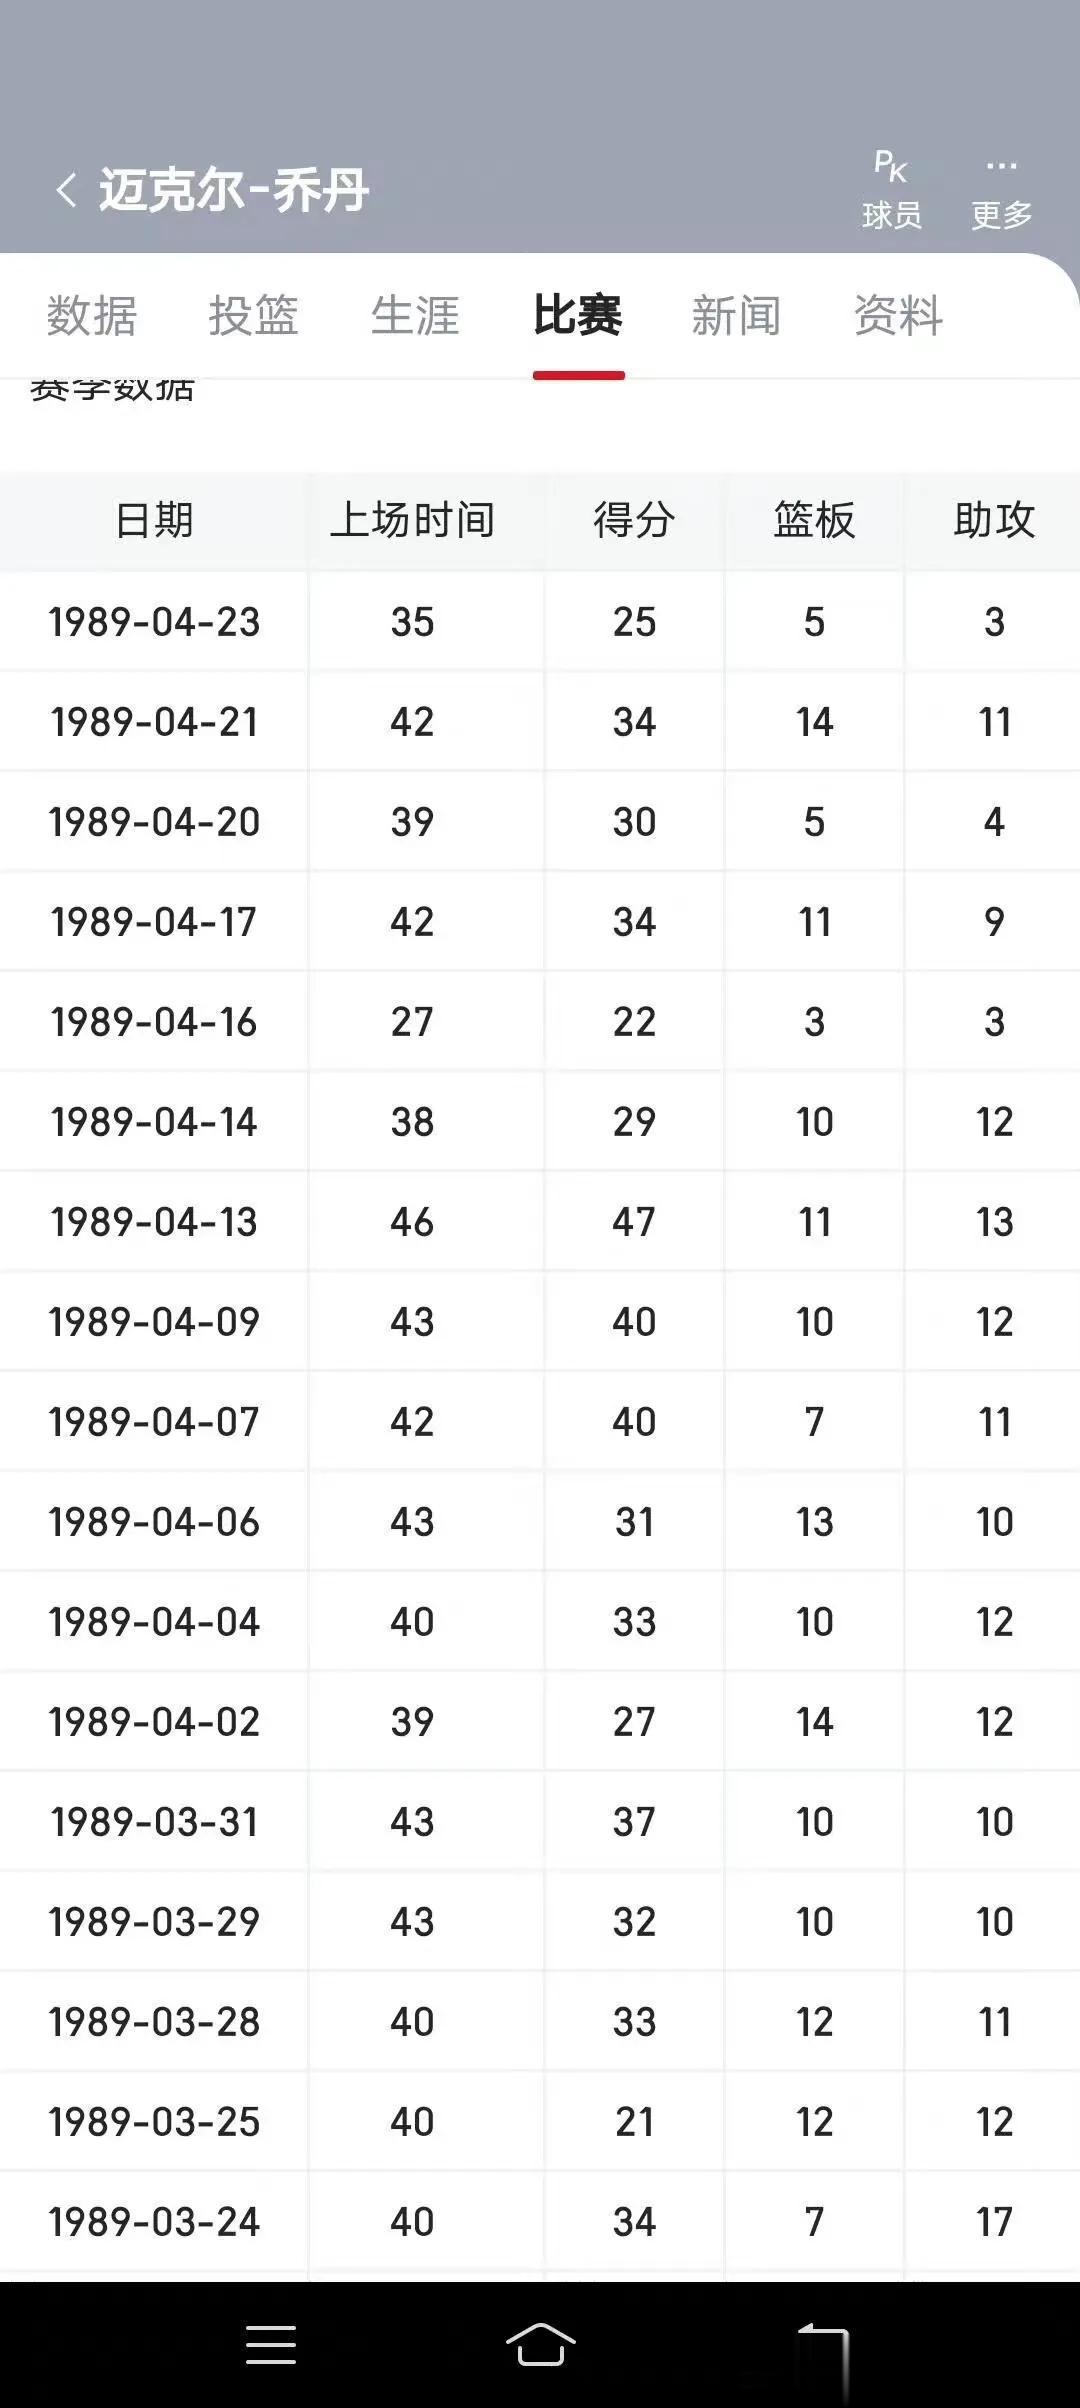 乔丹在当今联盟会不会砍下场均40+三双呢？

1989年3月11日至4月23日乔(2)